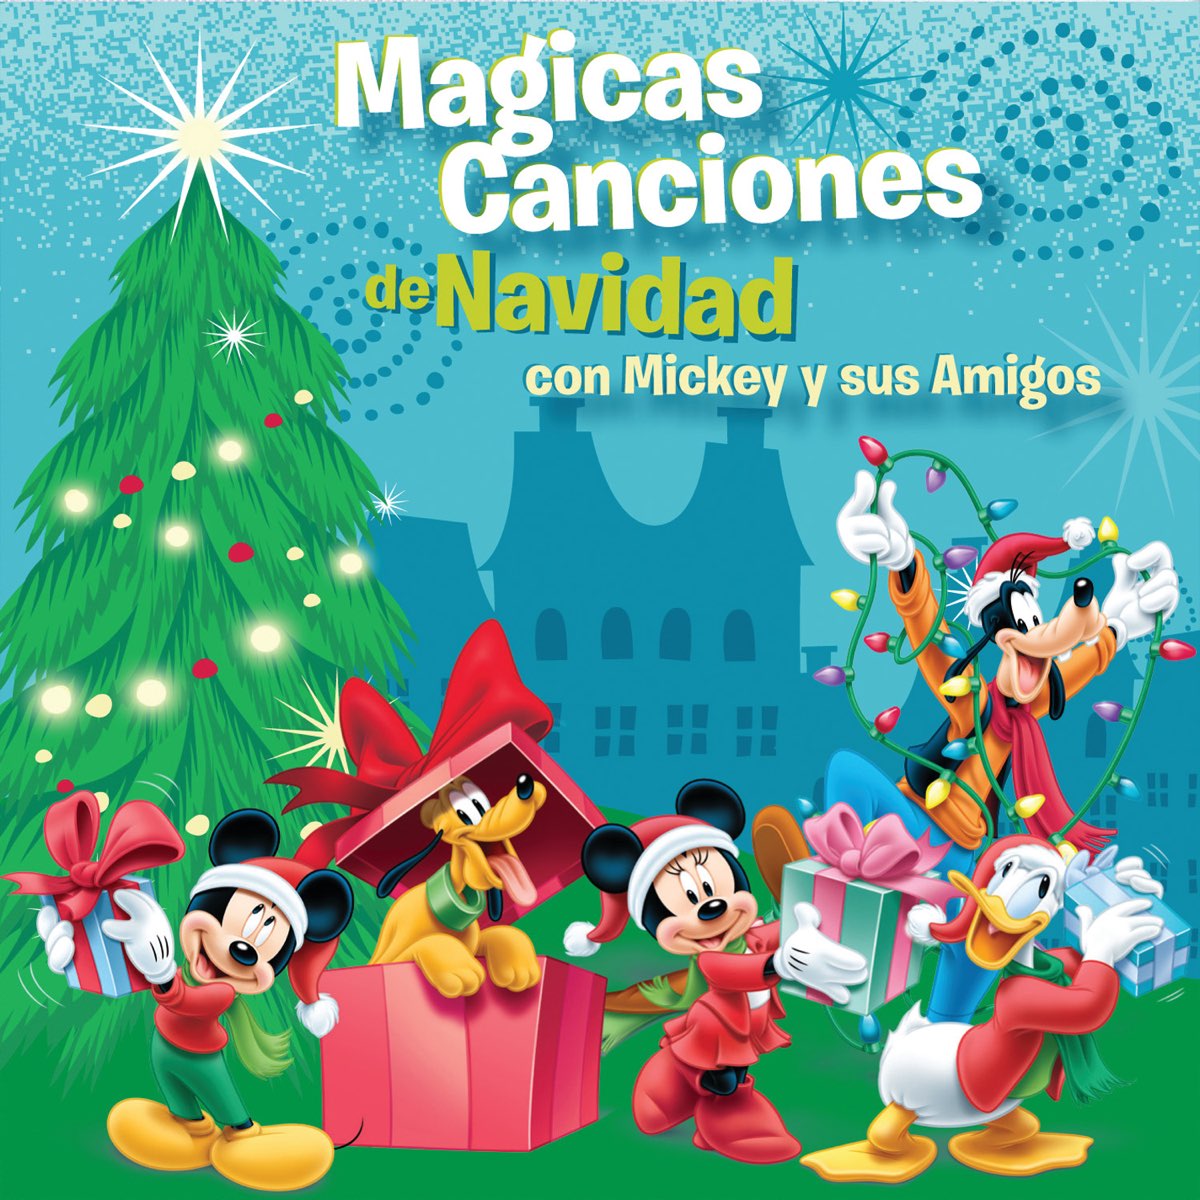 Mágicas Canciones de Navidad con Mickey y sus Amigos” álbum de Varios  Artistas en Apple Music